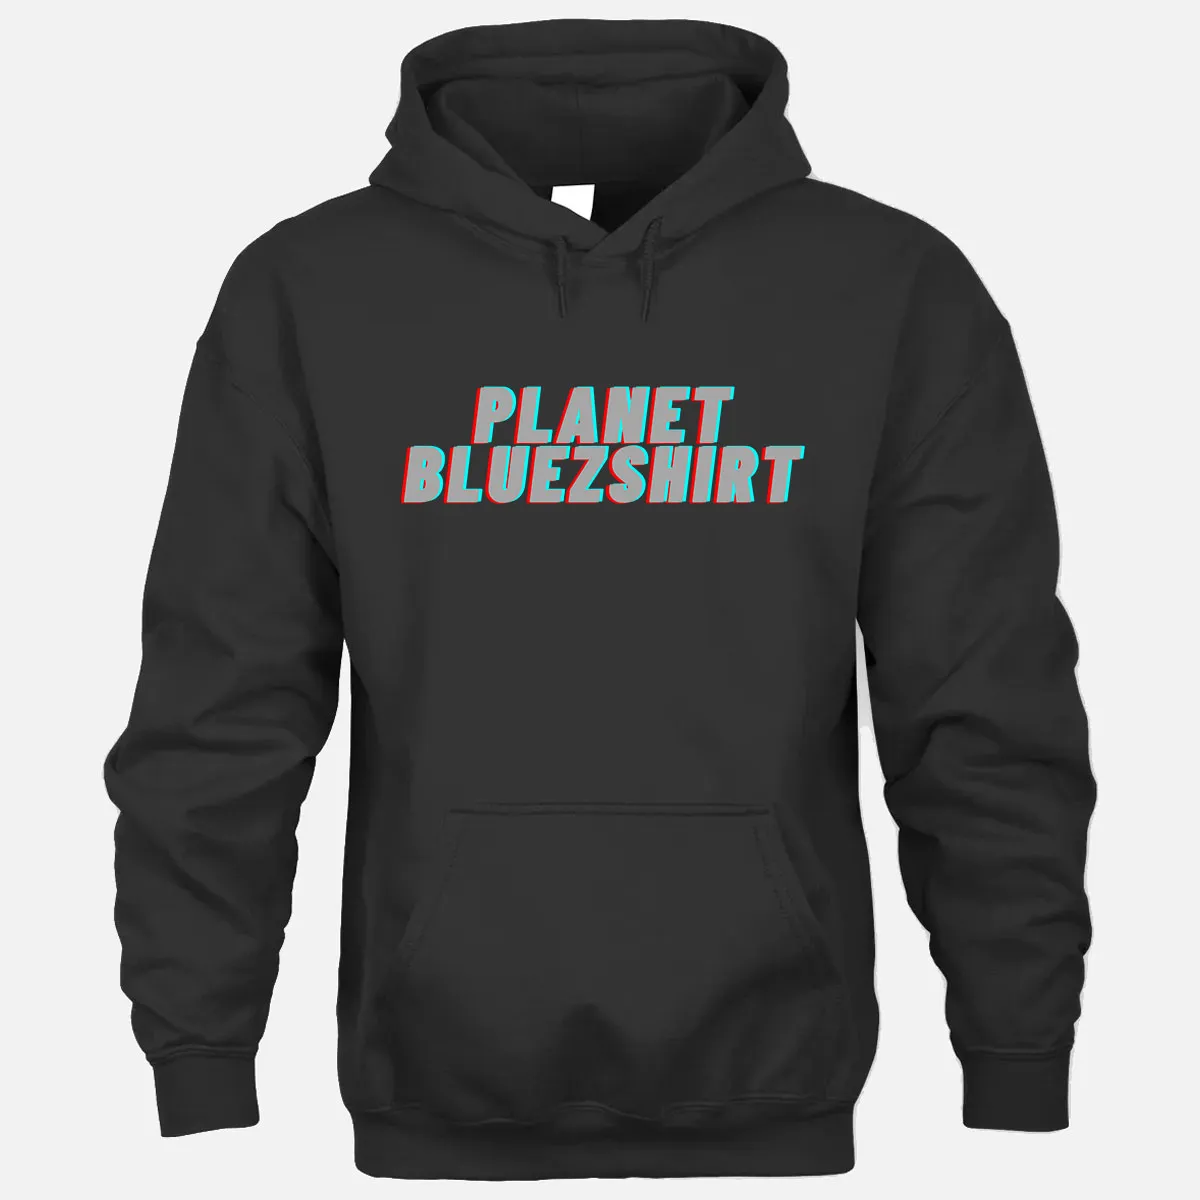 Planet Bluezshirt Hoodie - Black